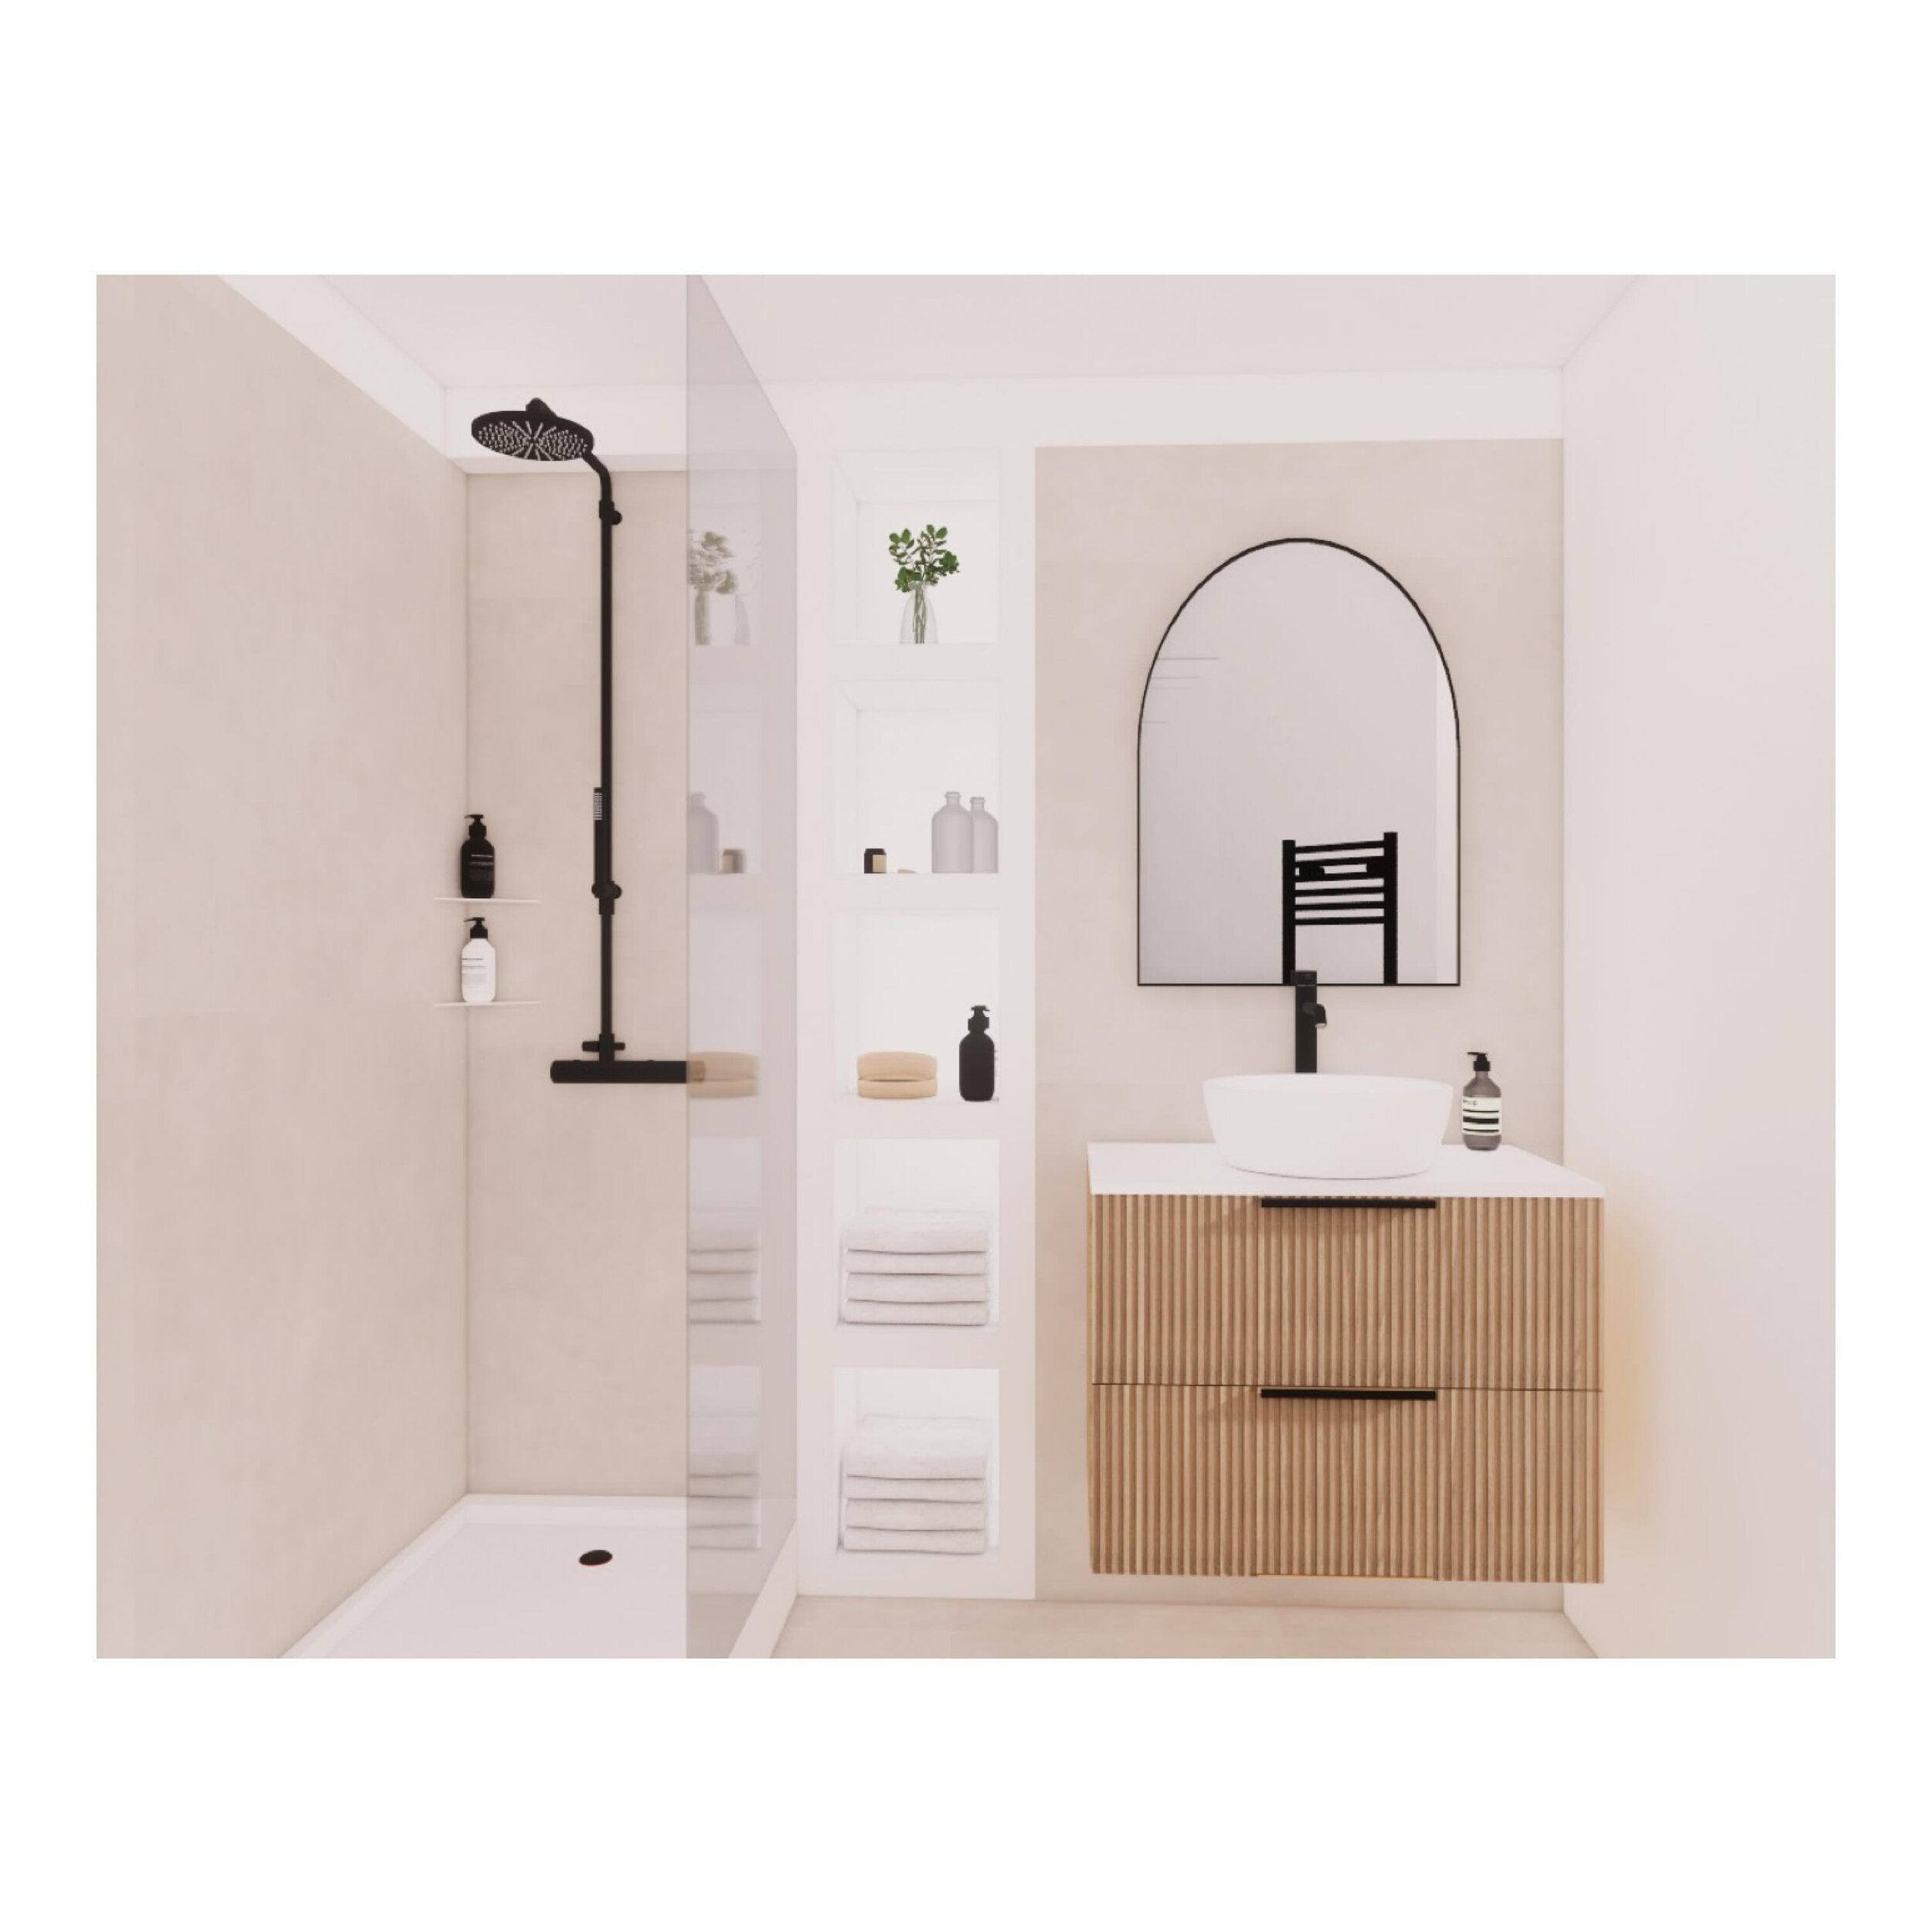 La petite salle de bain du Projet Querlon, en toute simplicit&eacute; 🌿
.
Les mat&eacute;riaux et &eacute;quipements sont maintenant valid&eacute;s ! ✨
.
.
.
#26juin #architecturedinterieur #designdinterieur #interiordesign #decorationinterieure #de